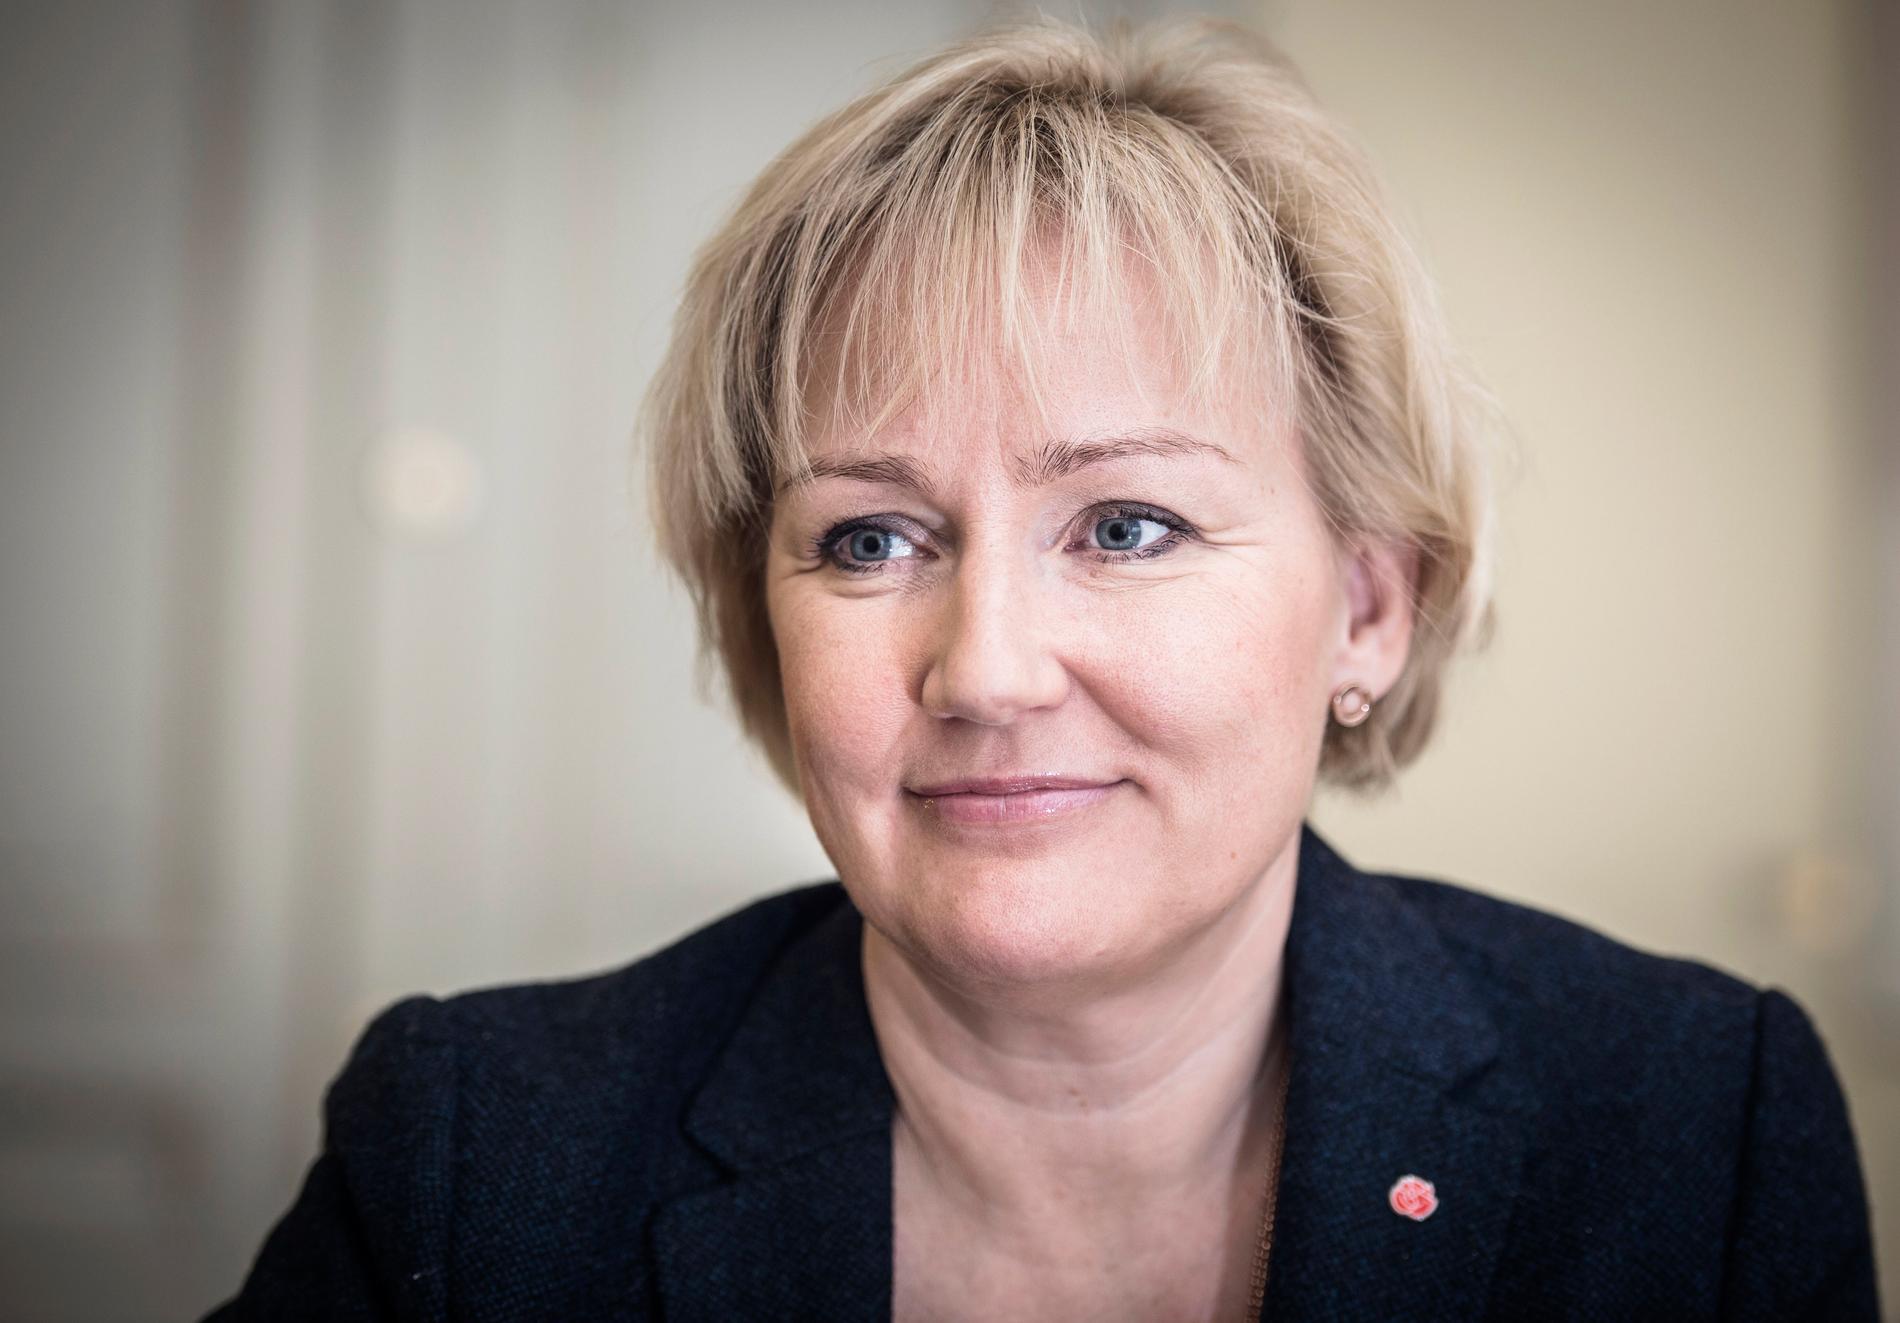 Bara var femte svensk professor är en kvinna.
För att öka jämställdheten tillsätter högskoleminister Helene Hellmark Knutsson (S) inom kort en nationell expertgrupp som ska leverera lösningar.
– Utvecklingen går alldeles för långsamt i dag, vi måste se till att vi tar vara på alla våra talanger, säger hon.